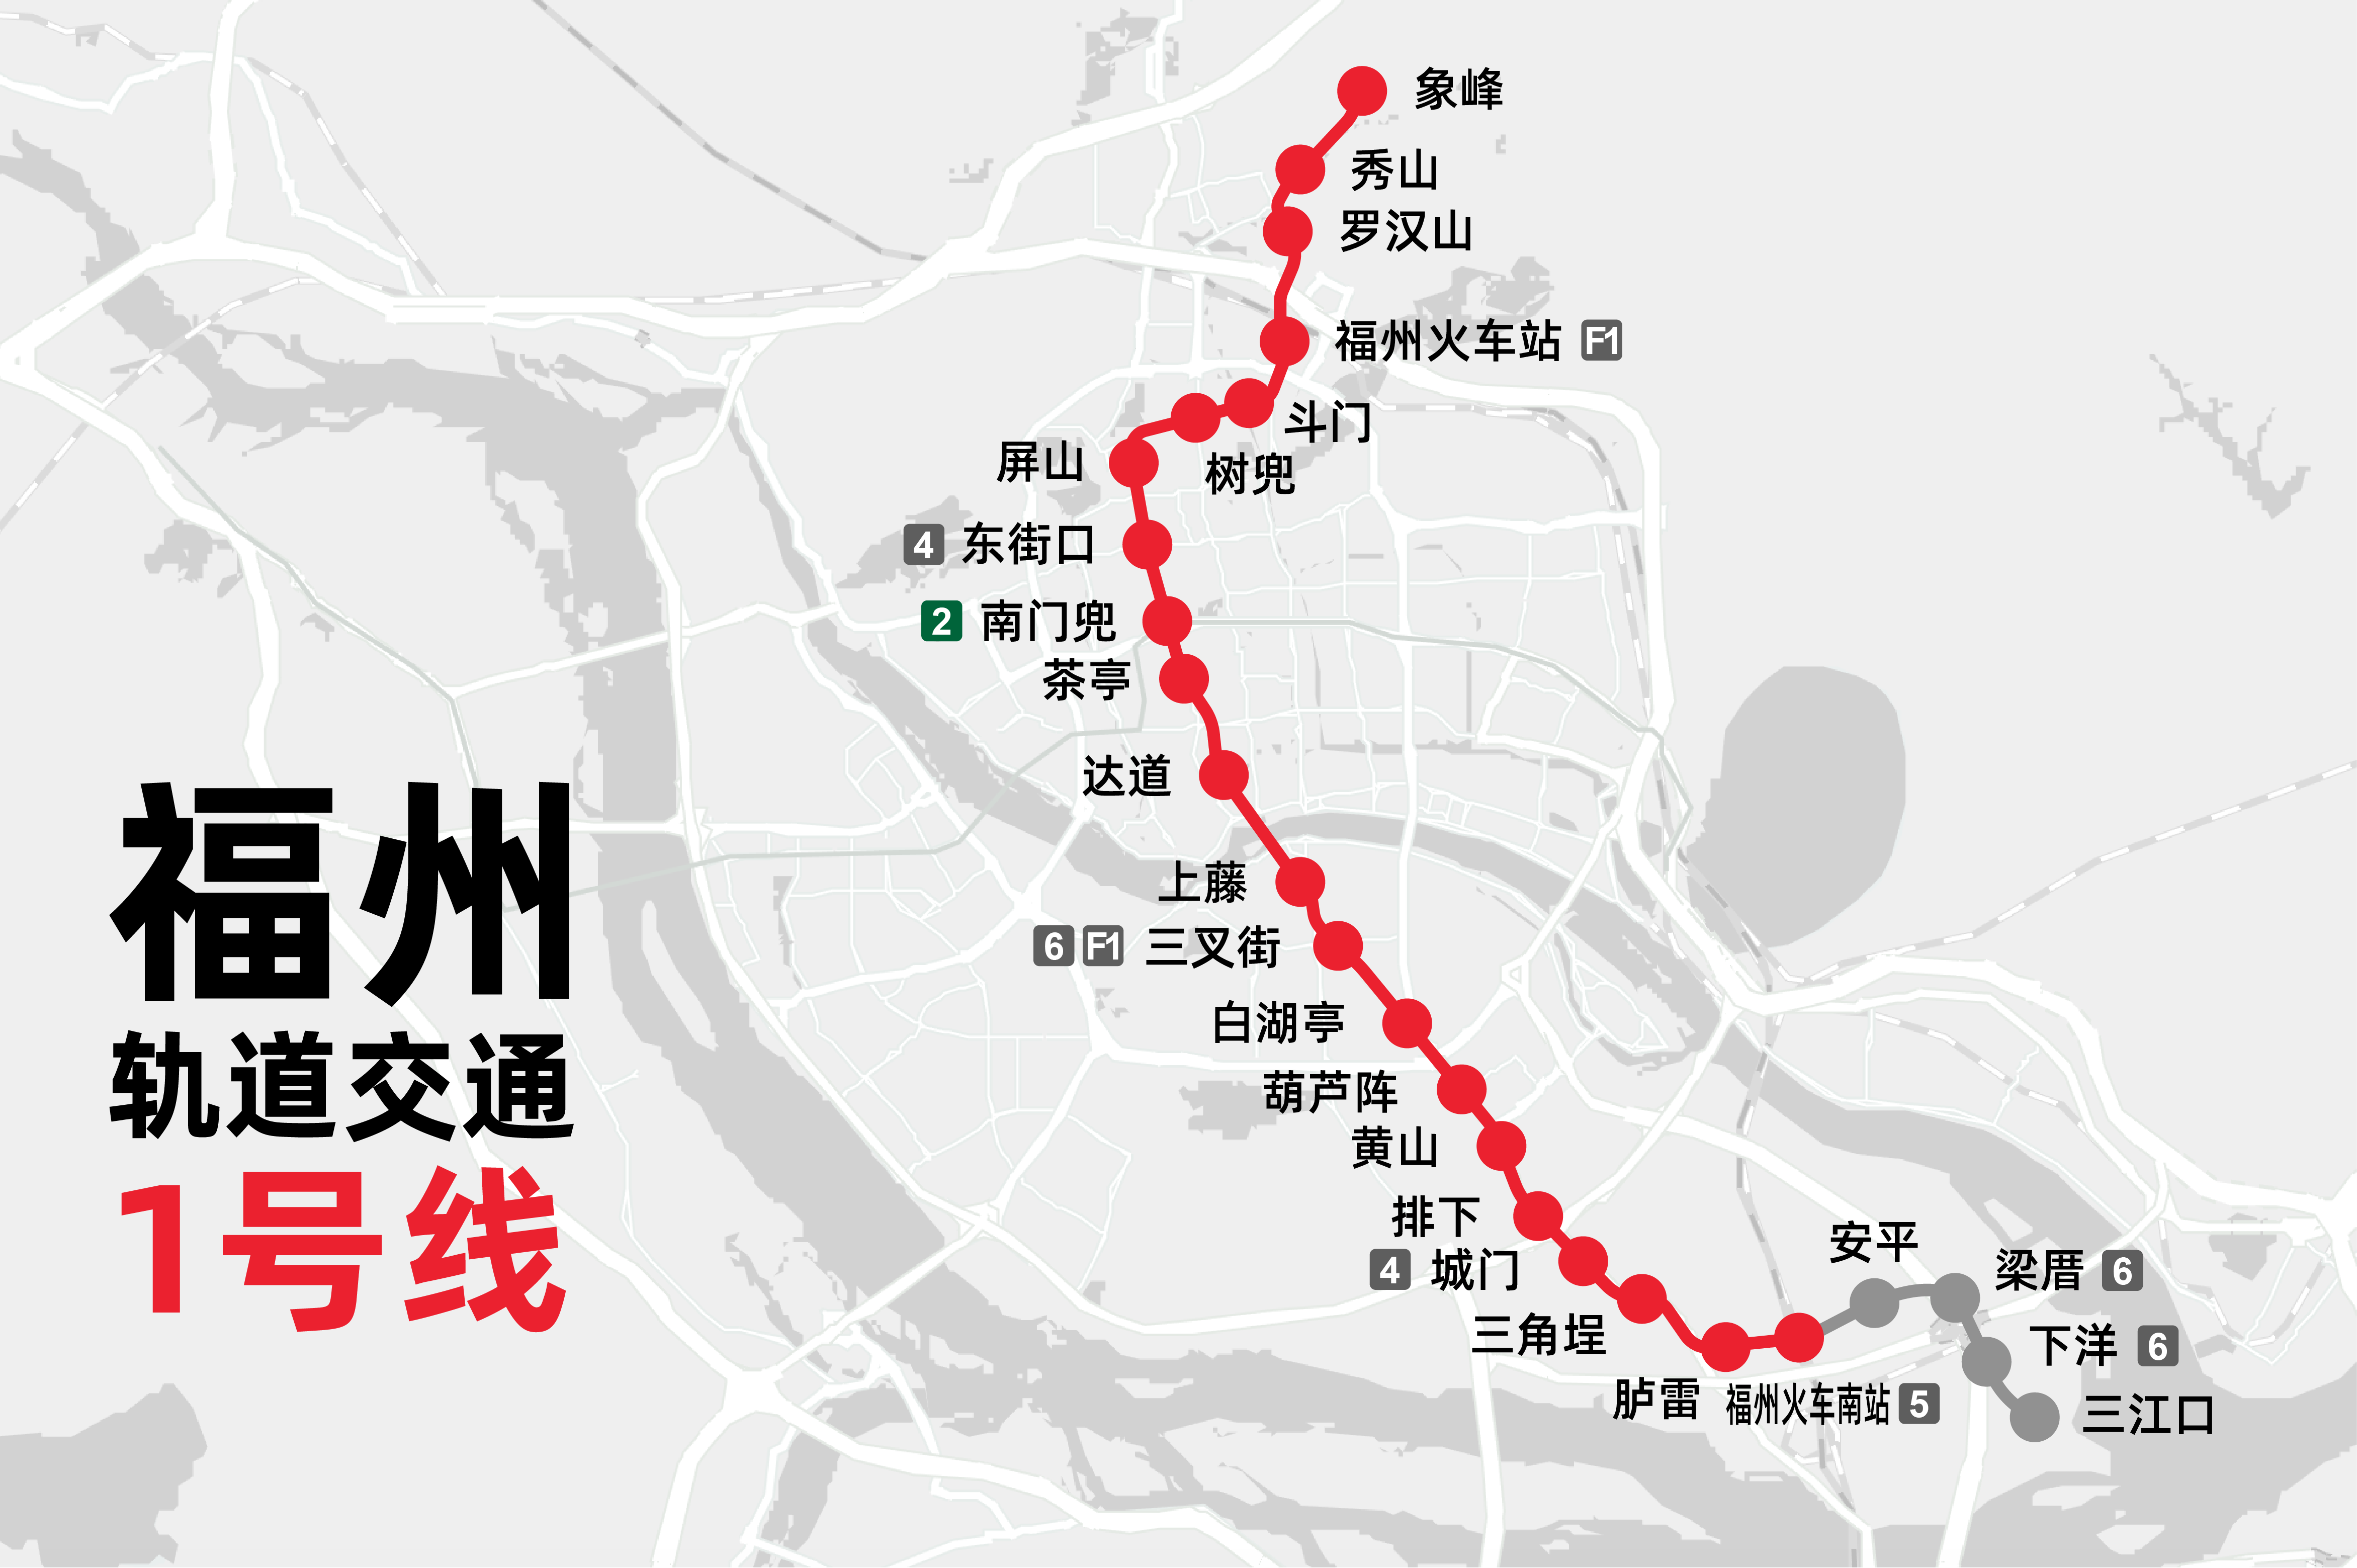 【原创】福州地铁1号线(含二期)线路走向图